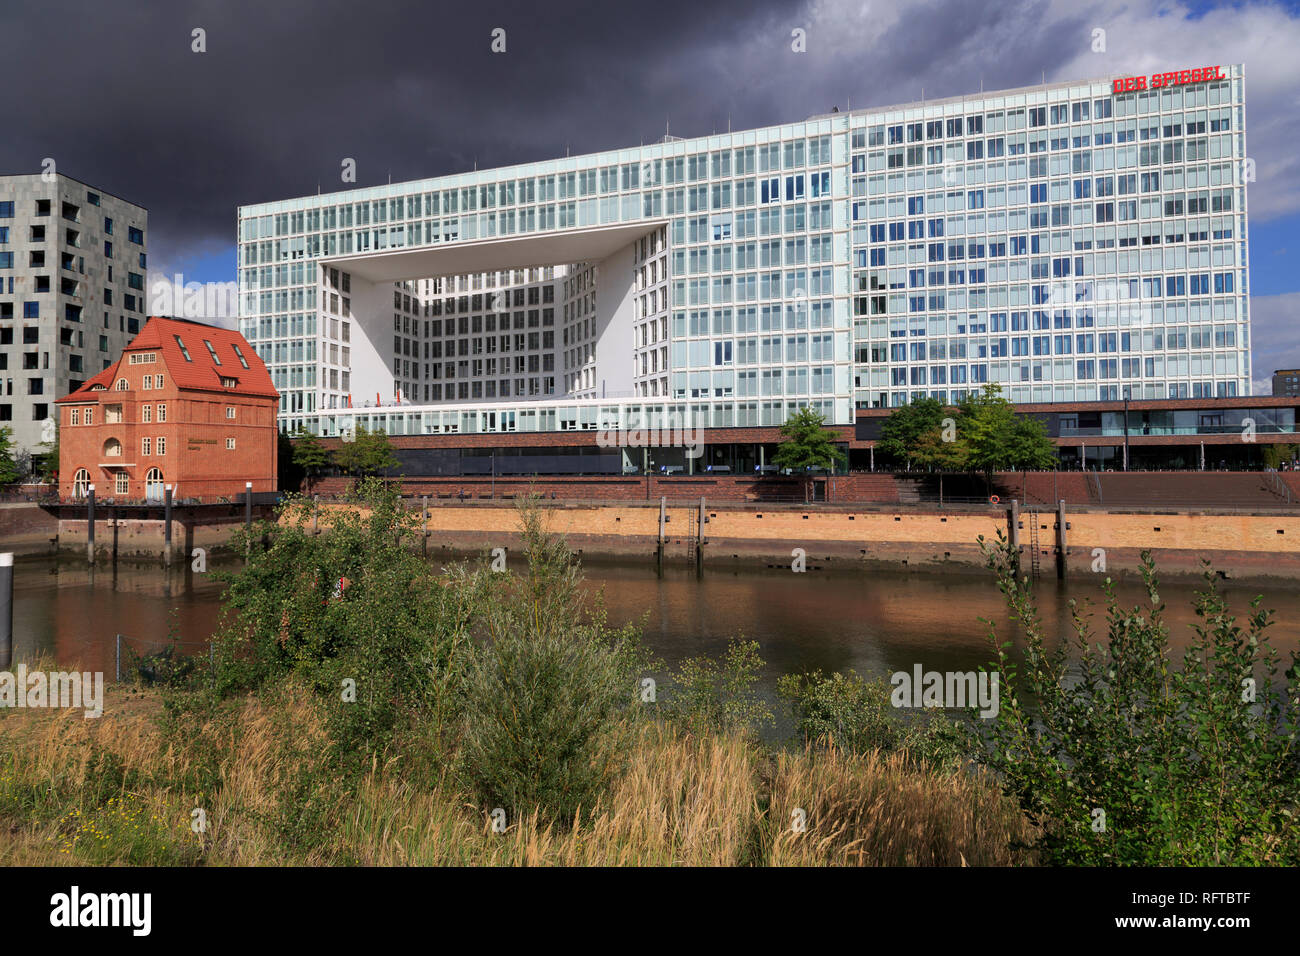 Der Spiegel Building, HafenCity District, Hamburg, Germany, Europe Stock Photo